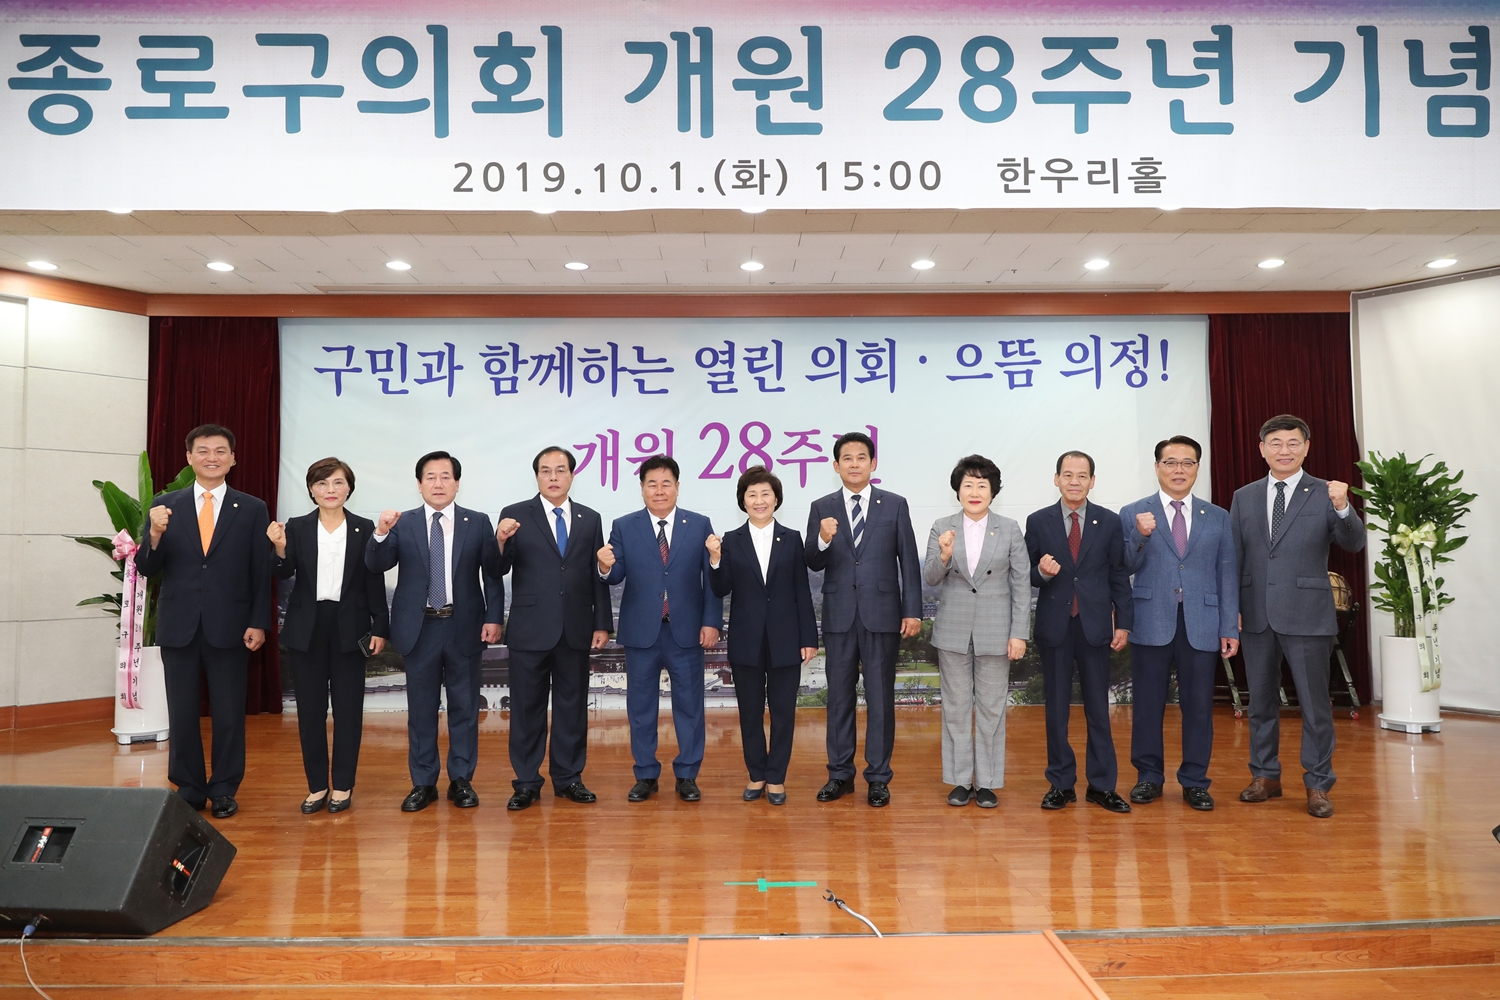 종로구의회 개원 28주년 기념식 개최(새창)